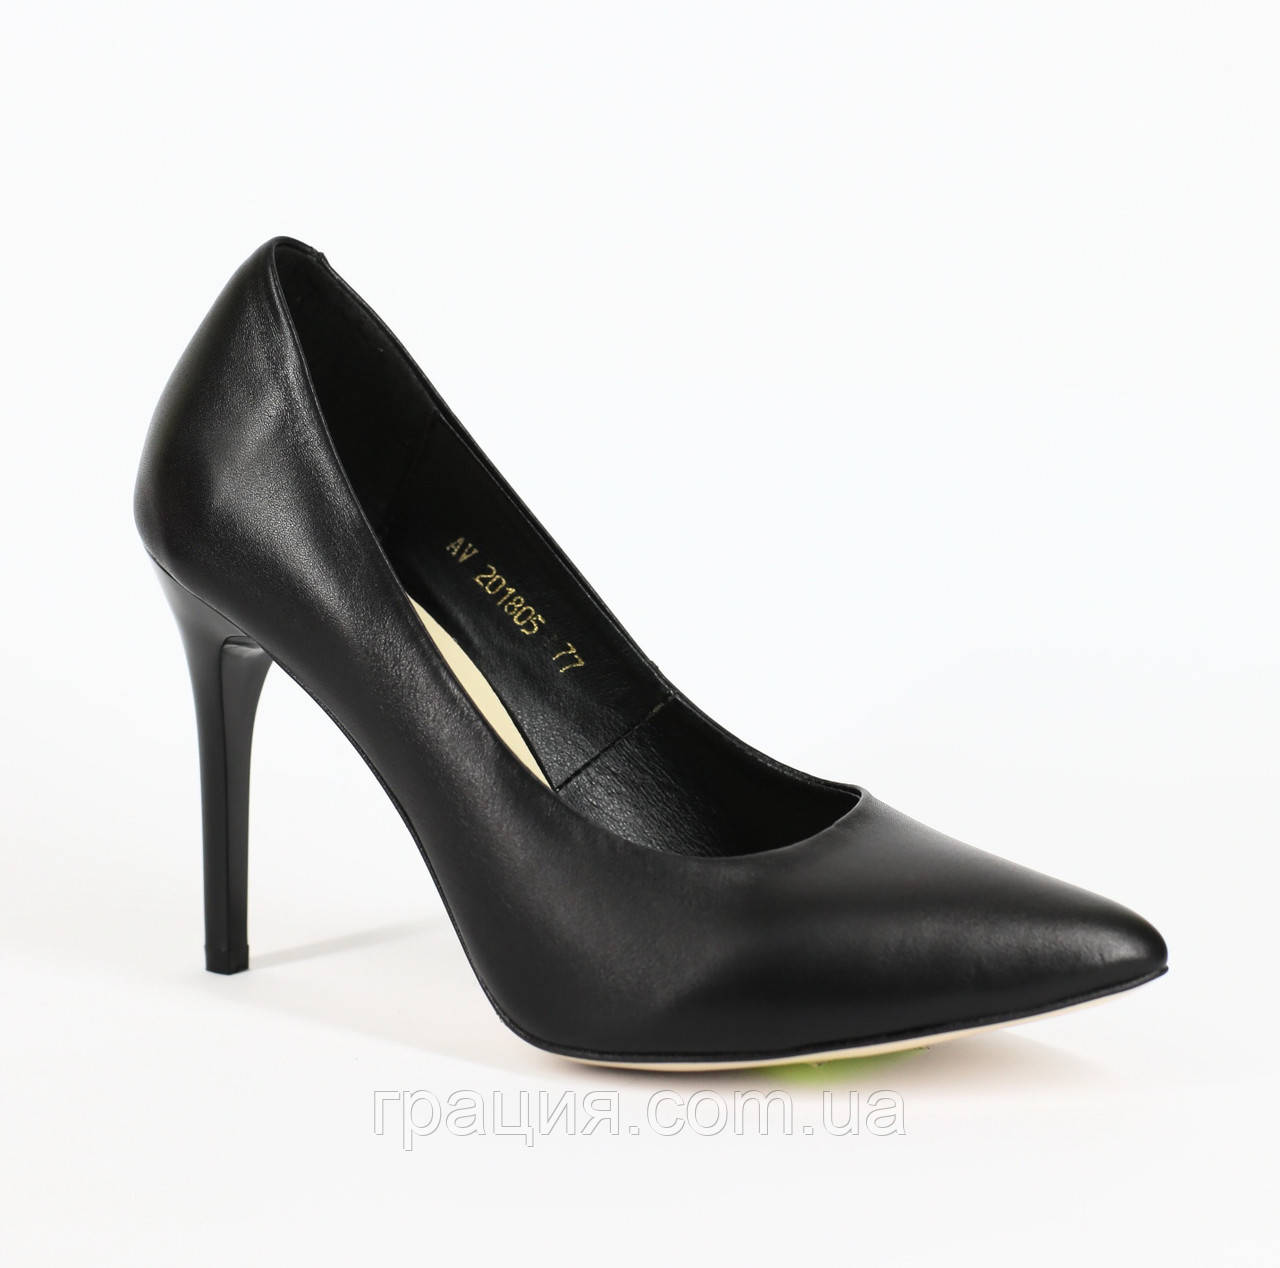 Жіночі елегантні чорні шкіряні туфлі на шпильці